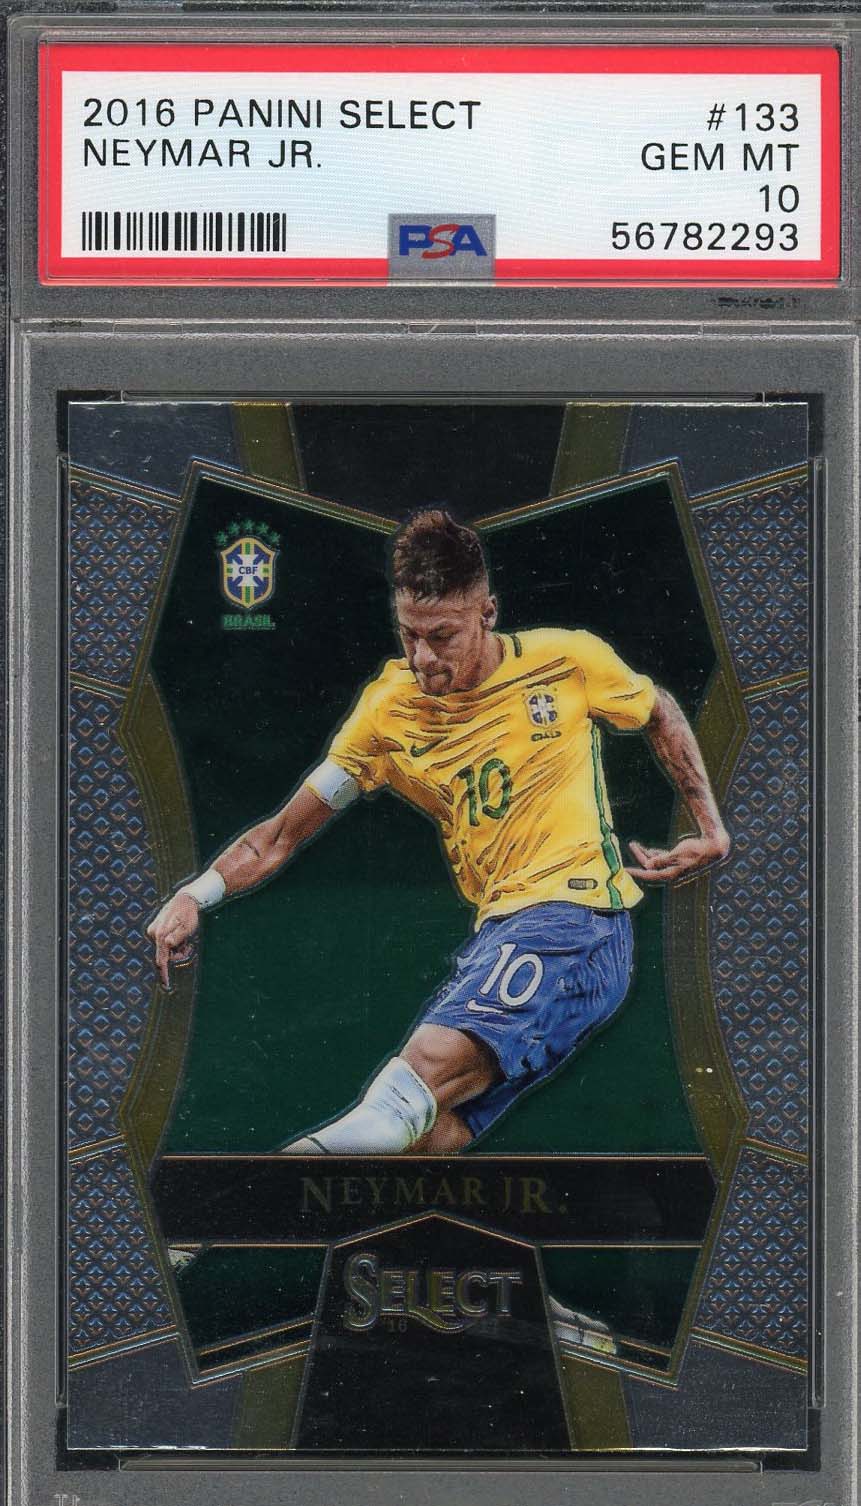 Neymar Jr 2016 Panini Select Soccer Card #133 Graded PSA 10